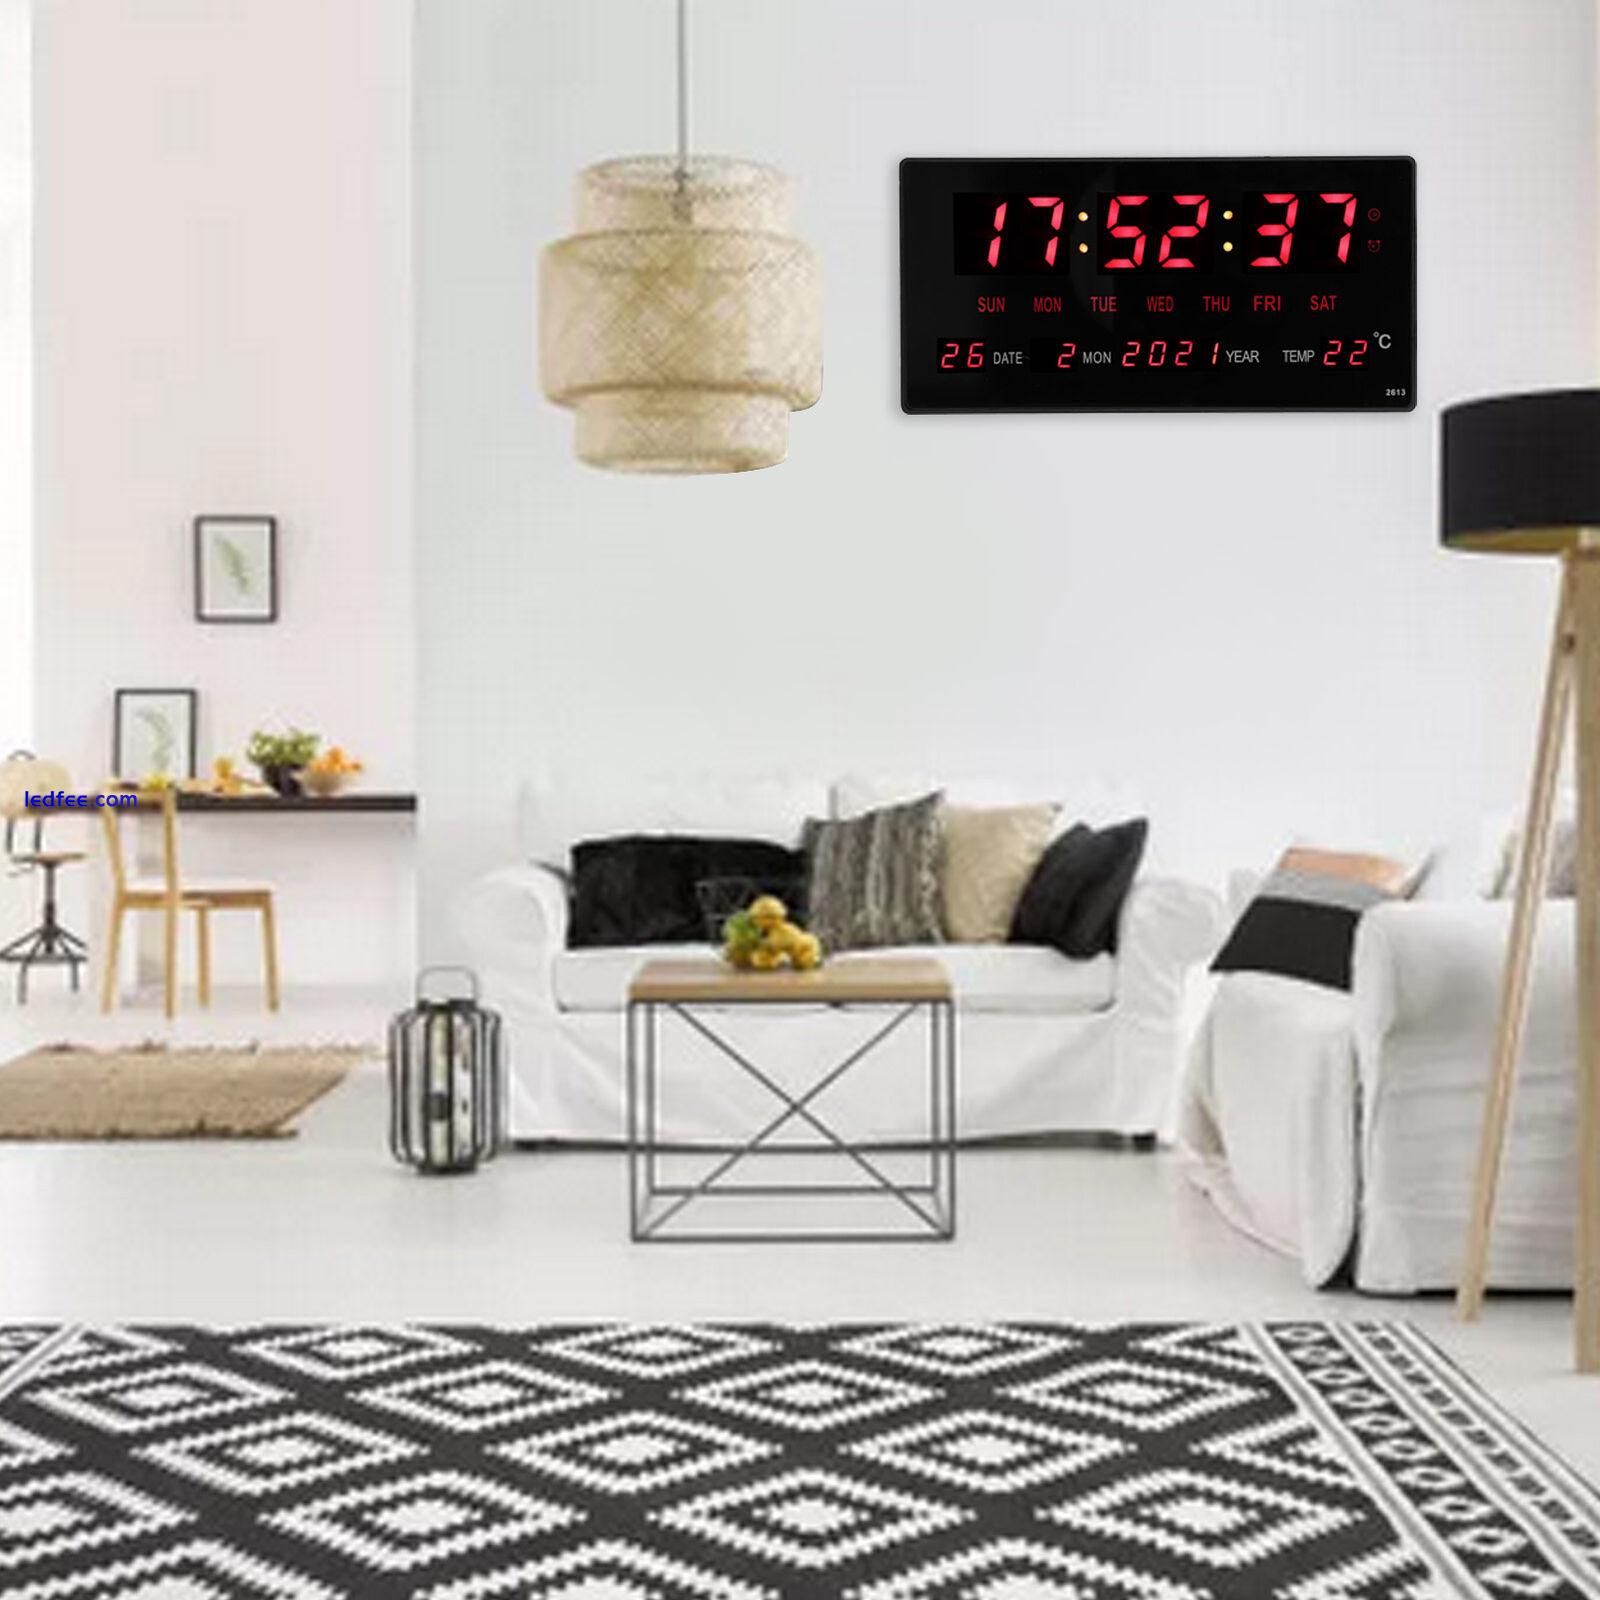 LED Digital Clock Large Display Electronic Calendar Clock With Indoor Temp RMM 0 